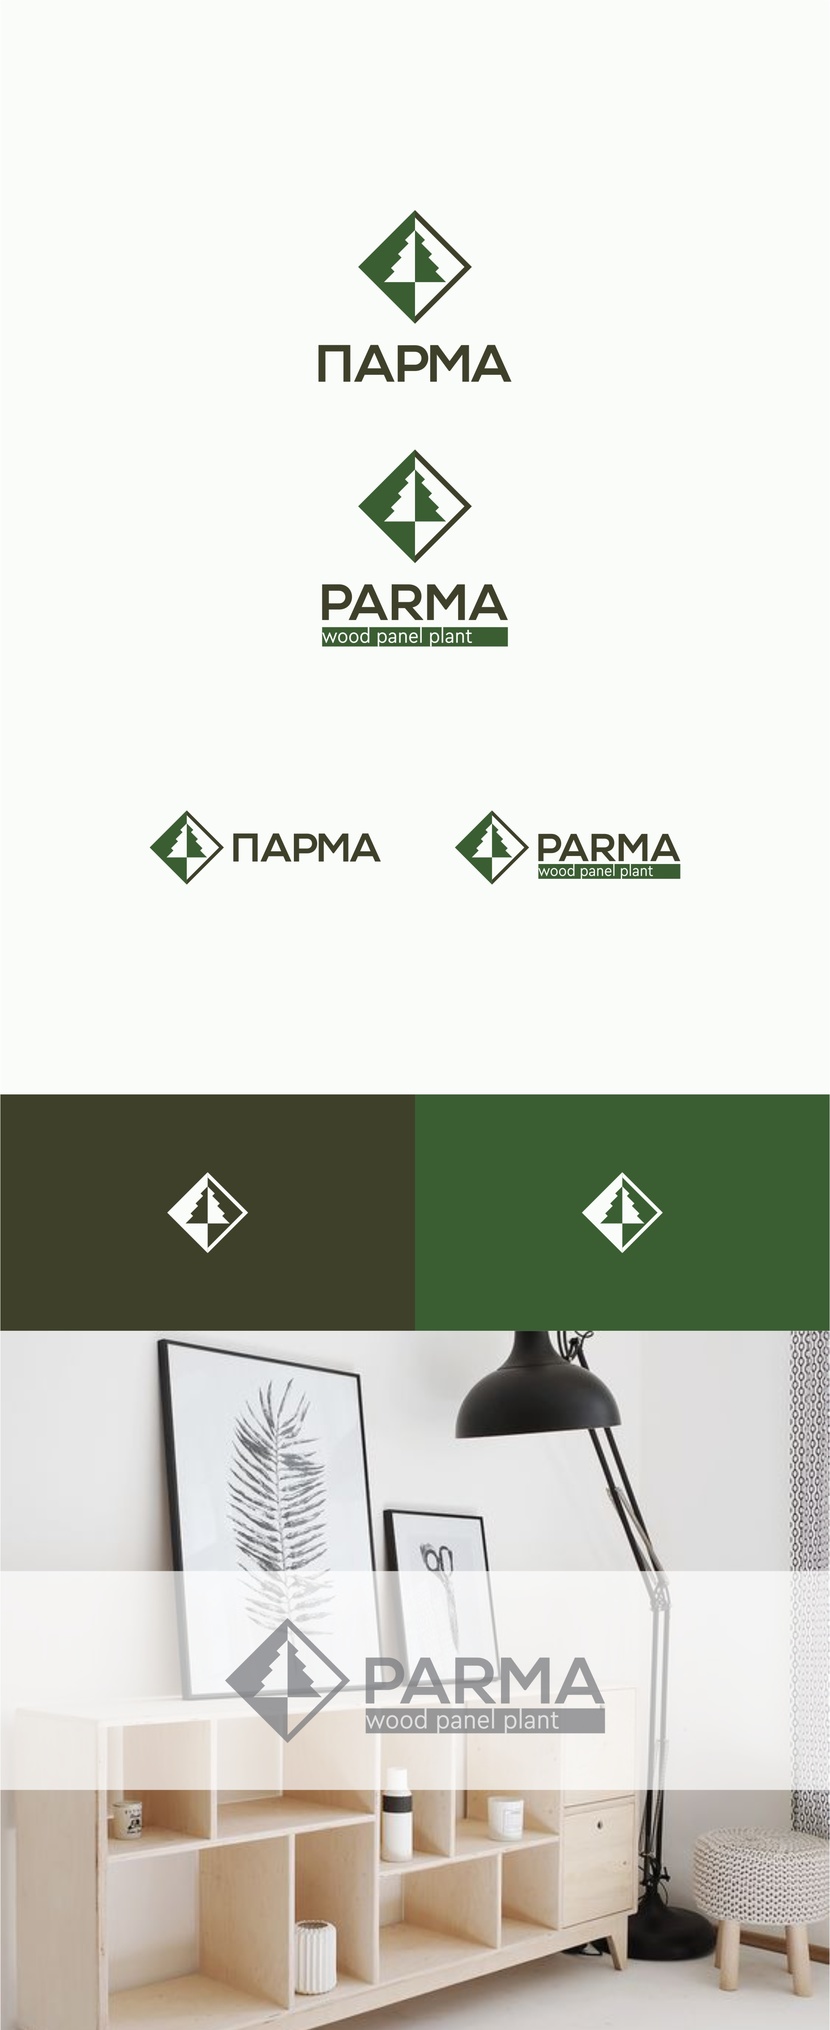 Добрый день, попробовала сохранить узнаваемость Ваш старый логотип  преобразовав - Разработать логотип для завода древесных плит "ПАРМА"»